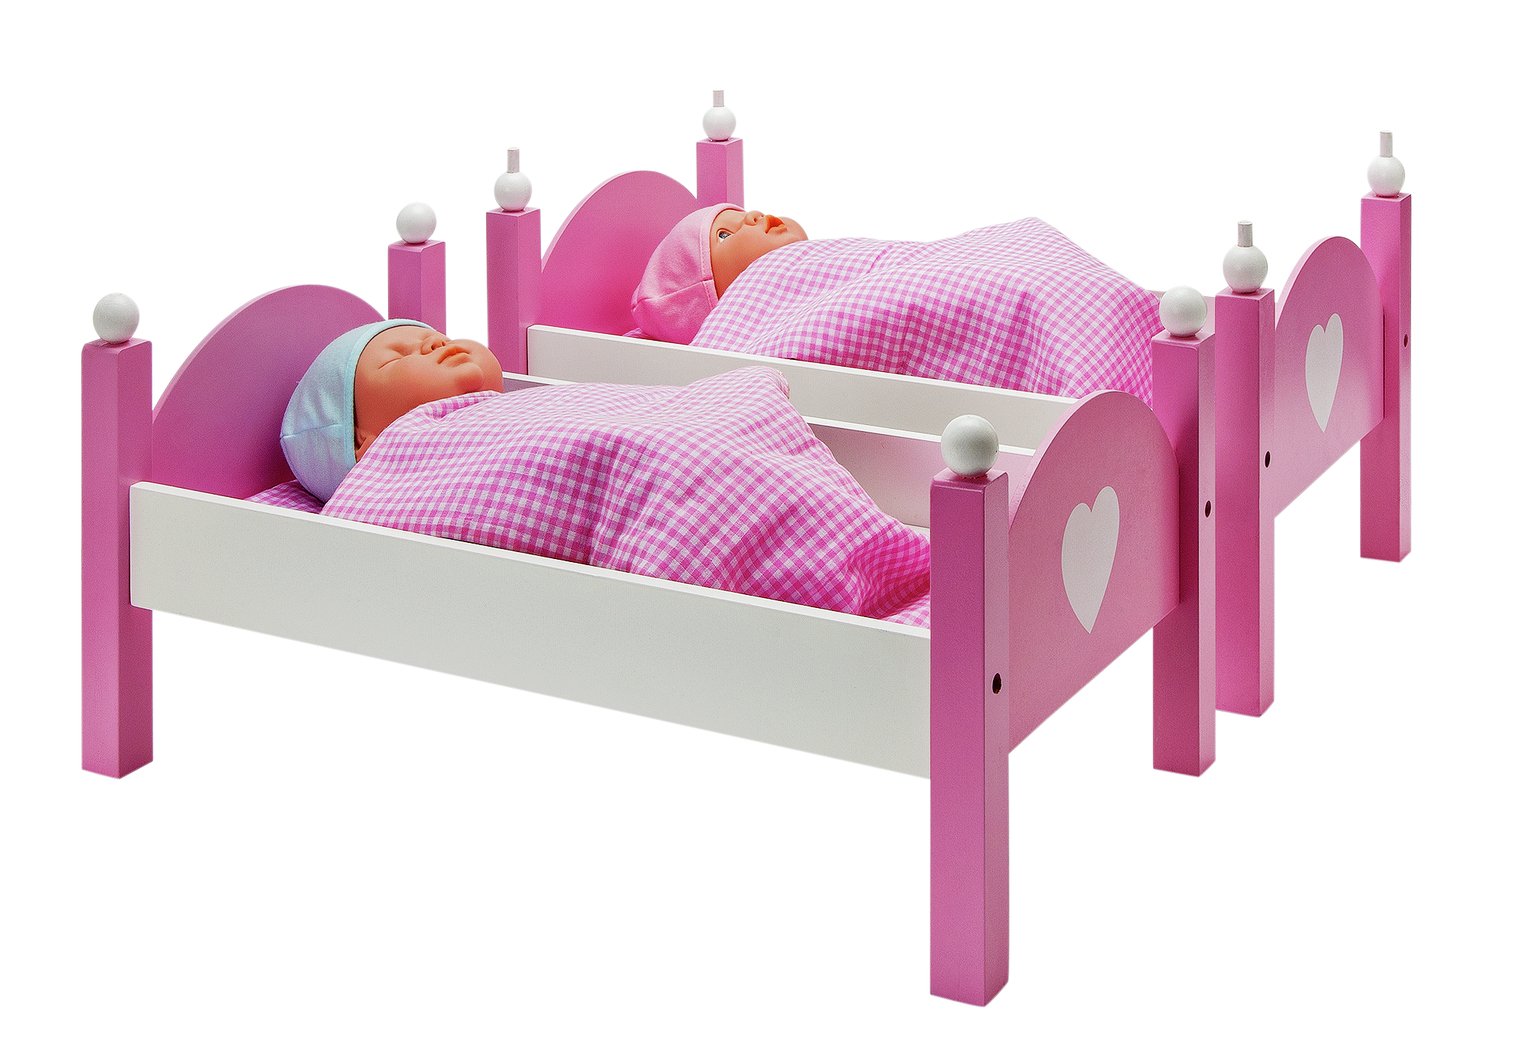 dolls bunk beds asda